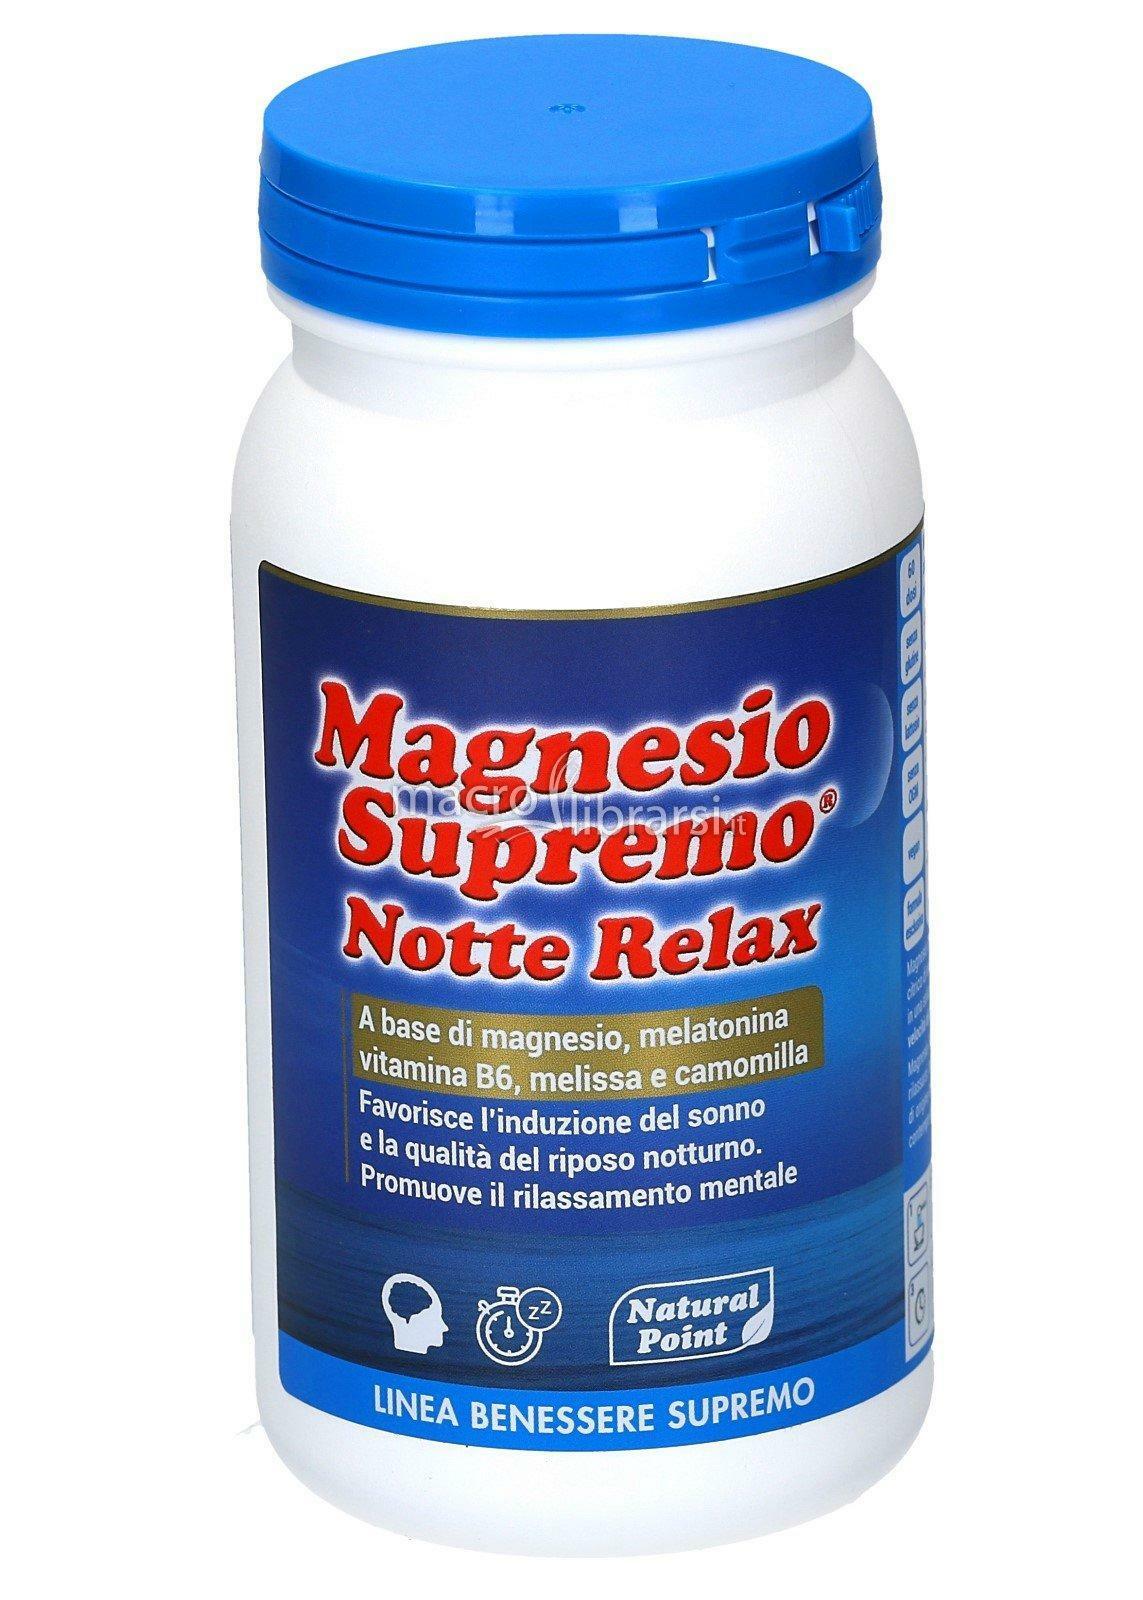 natural point natural point - magnesio supremo notte relax - a base di magnesio, melatonina, vitamina b6, melissa e camomilla - 150g